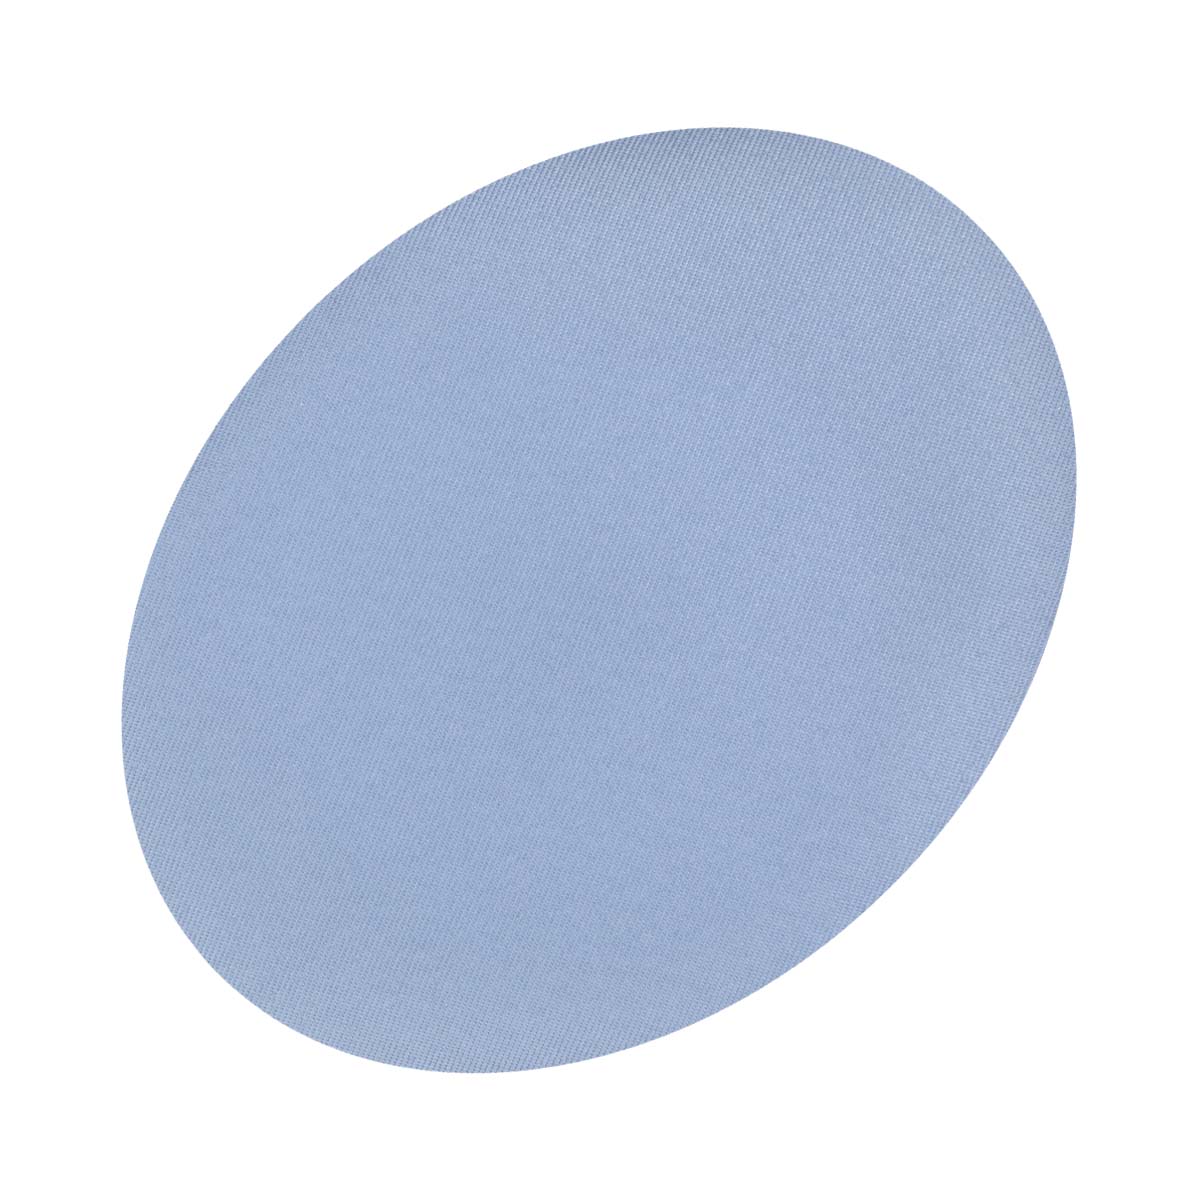 Заплатка термоклеевая (уп.1 пара) овальная 142 х 110 мм, 15сек при темп.150°С, цвет серо-голубой